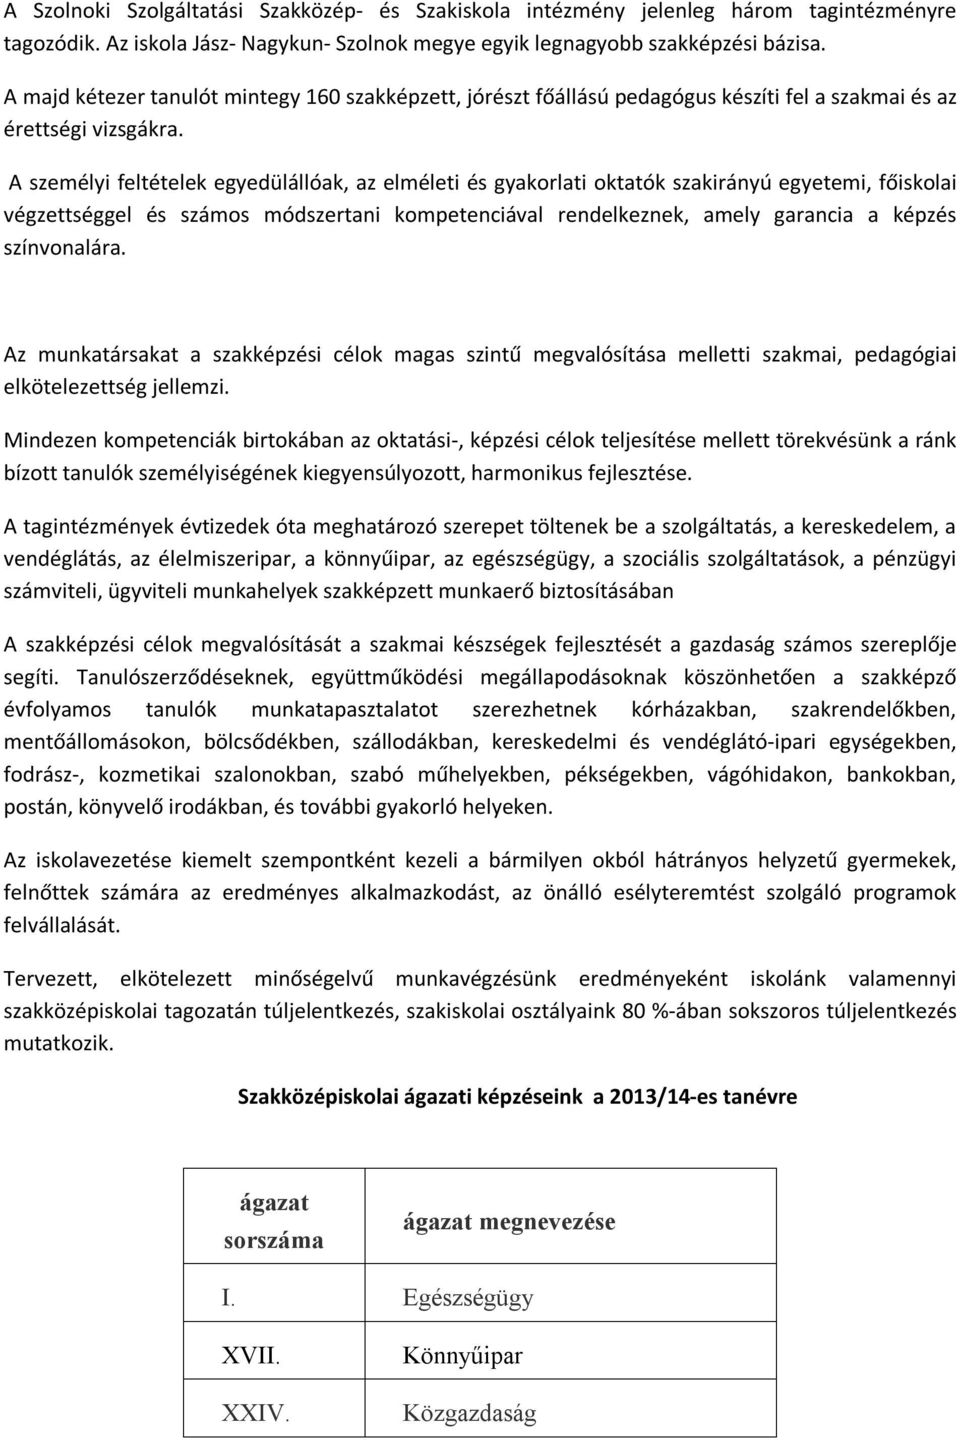 A Szolnoki Szolgáltatási Szakközép- és Szakiskola szakmai munkájának,  múltjának rövid bemutatása - PDF Ingyenes letöltés